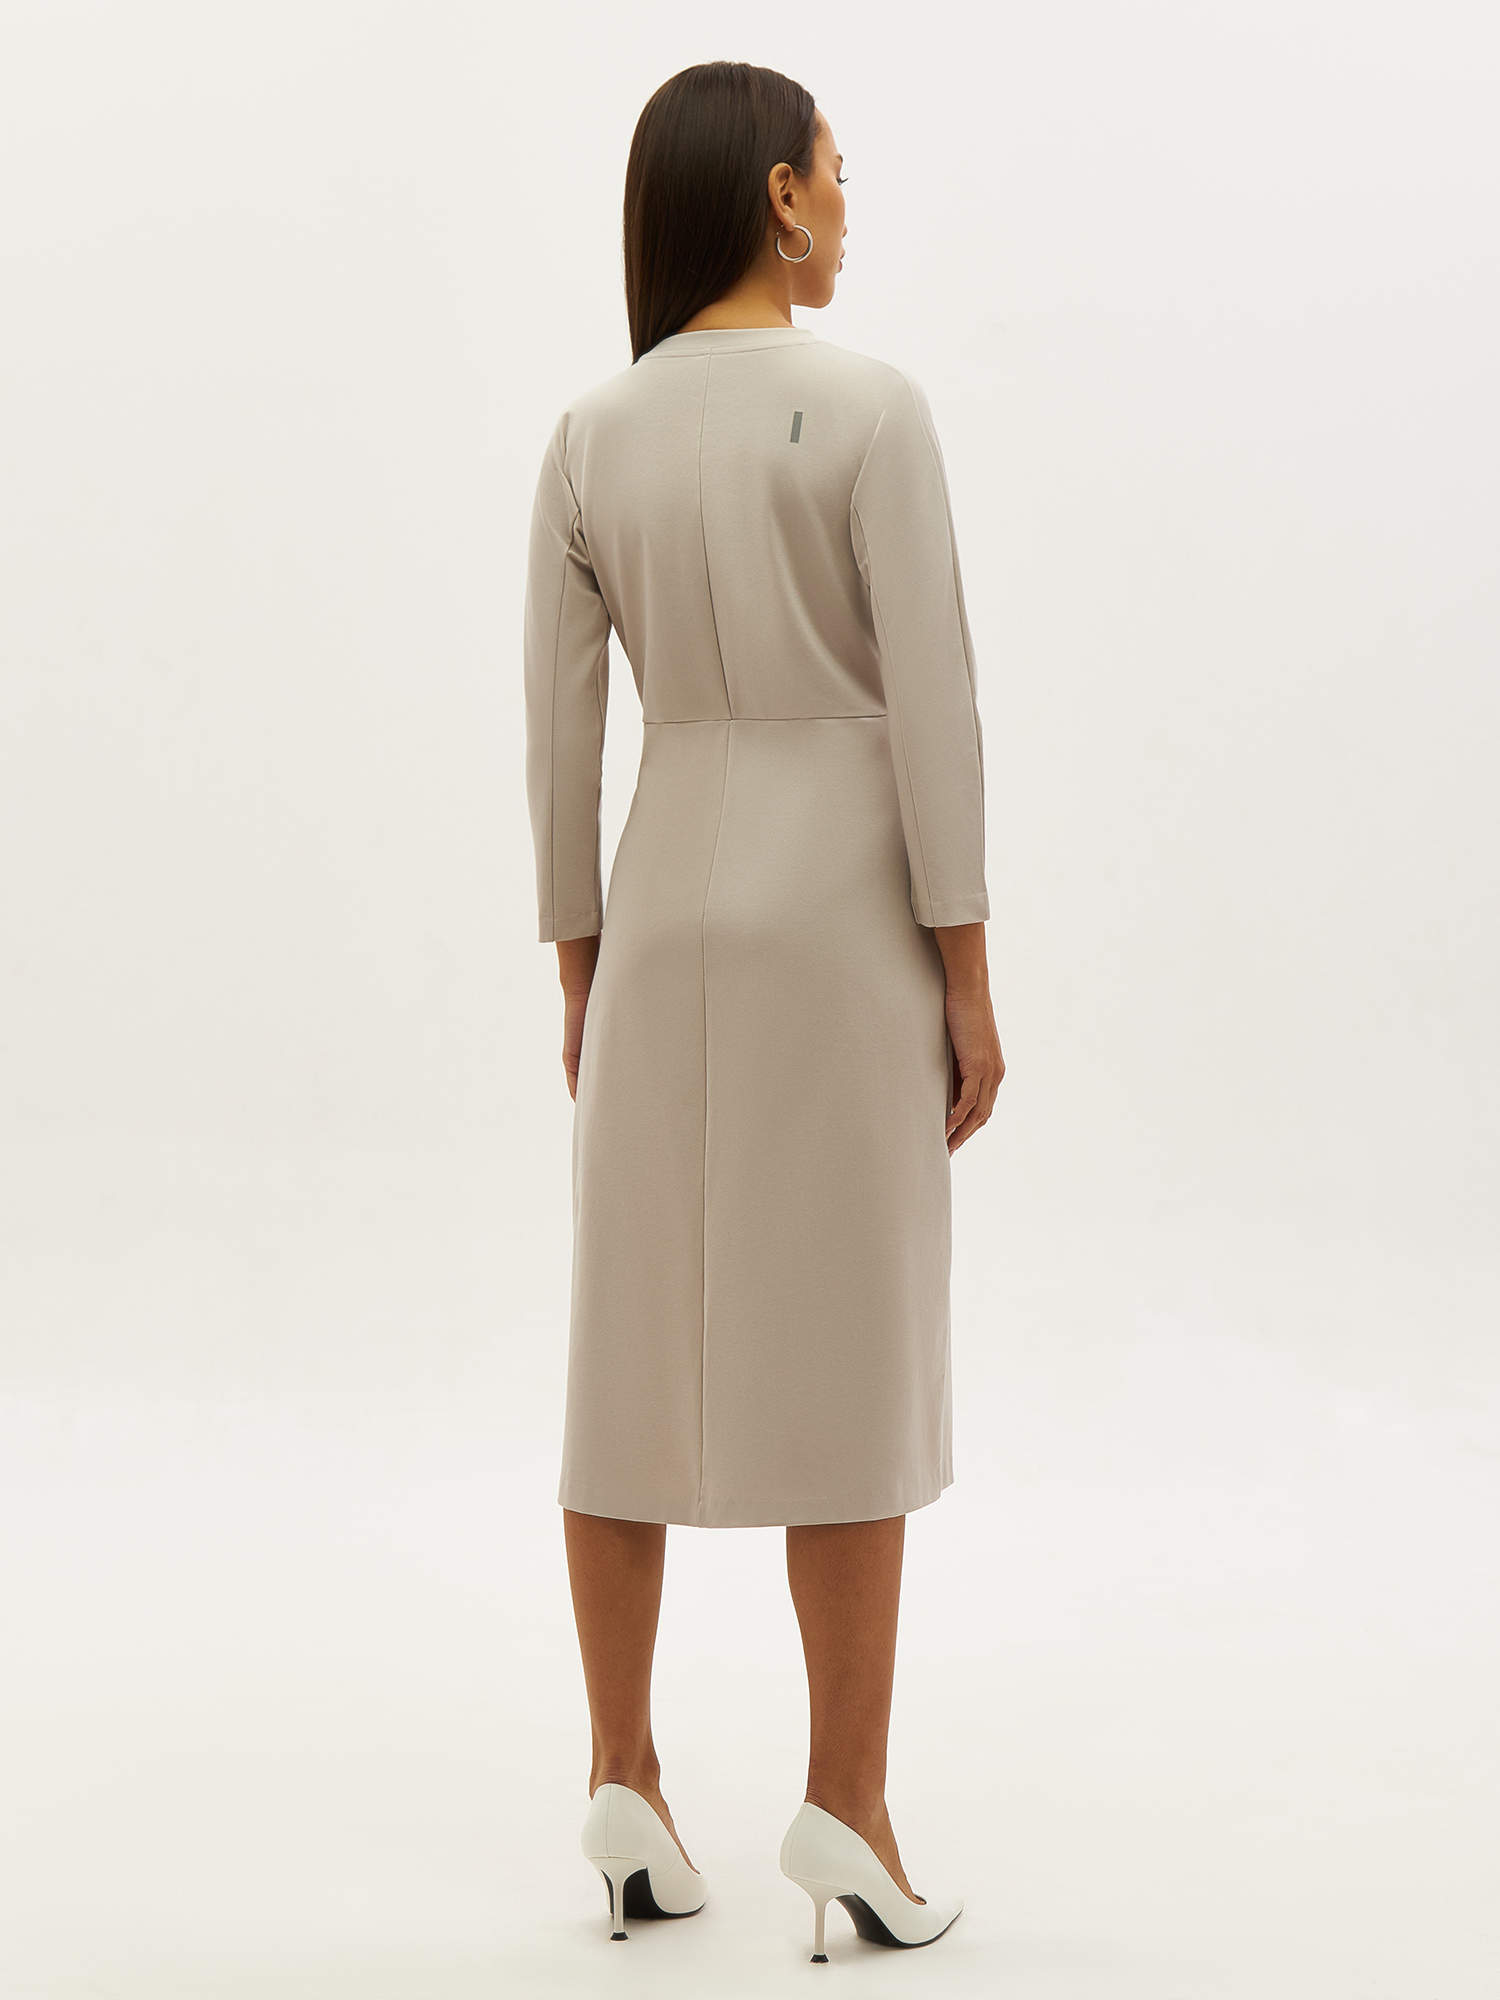 Трикотажное платье PAVO со светоотражающим брендингом. Изображение 5